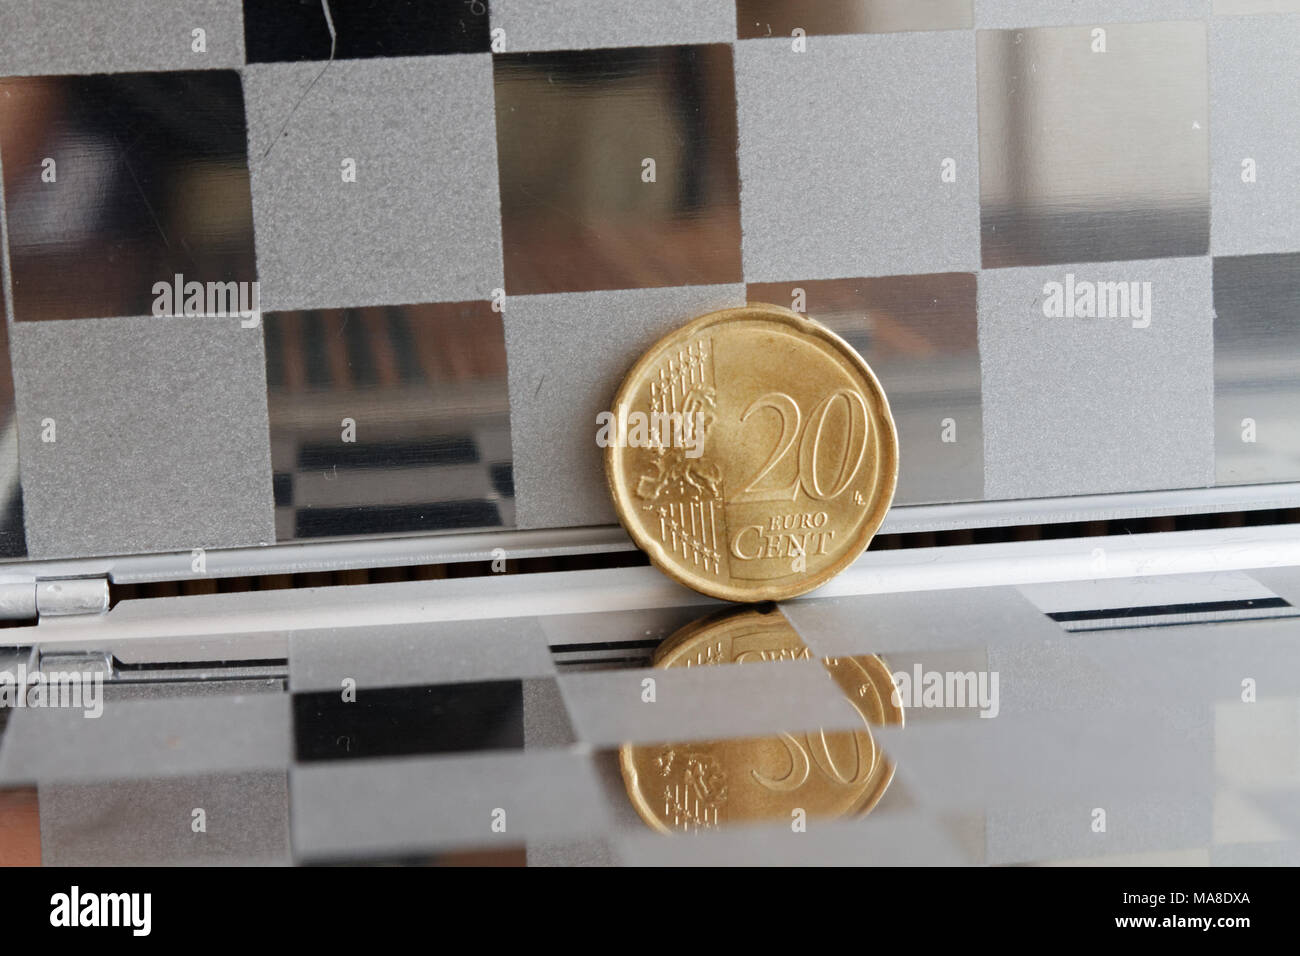 Las monedas de euro en espejo reflejan radica en la accidentada monedero,  Denominación de fondo es de veinte céntimos de euro Fotografía de stock -  Alamy